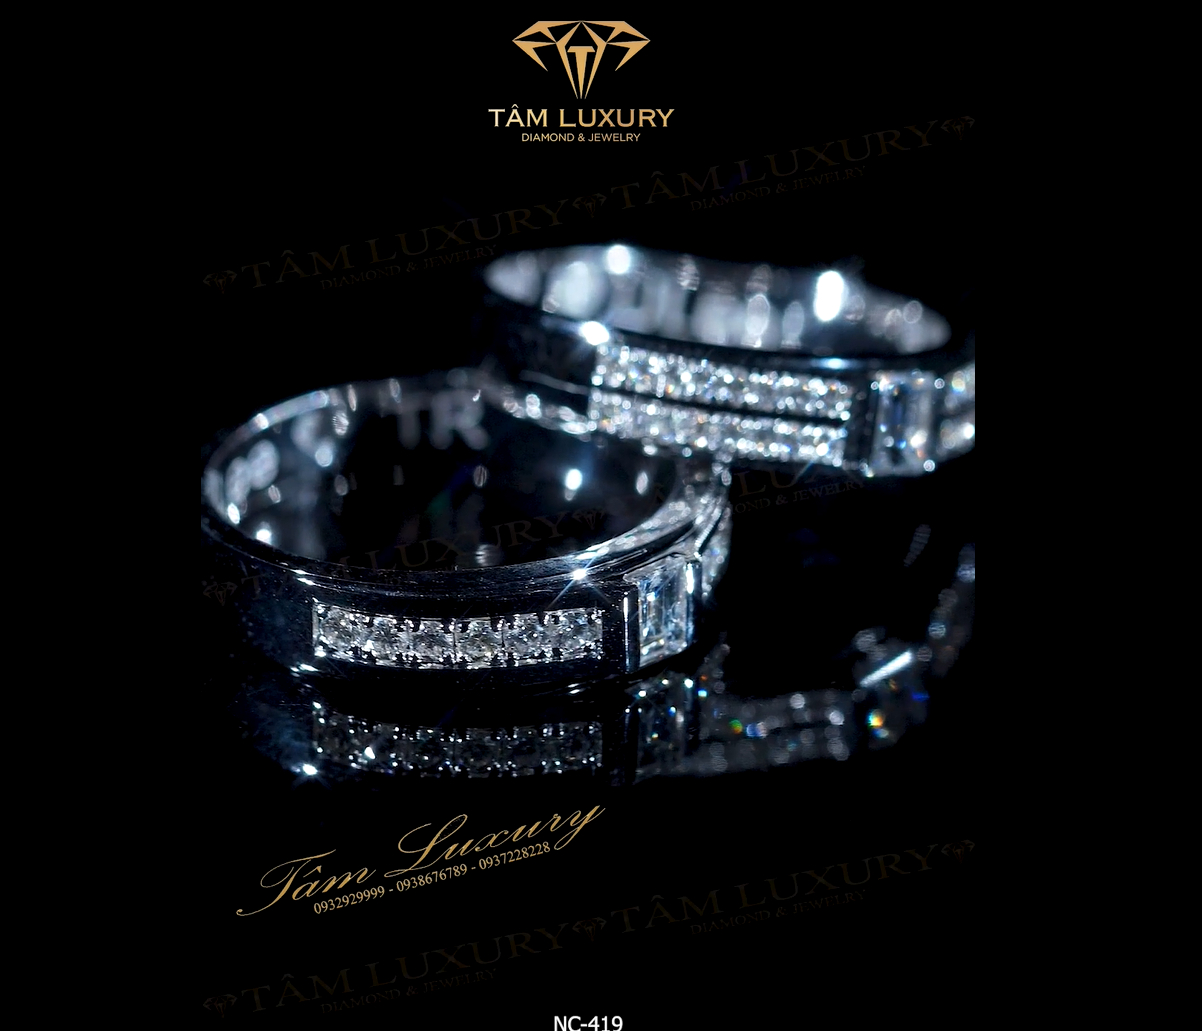 Hãy đến với Tâm Luxury để trải nghiệm và khám phá các viên kim cương tuyệt vời